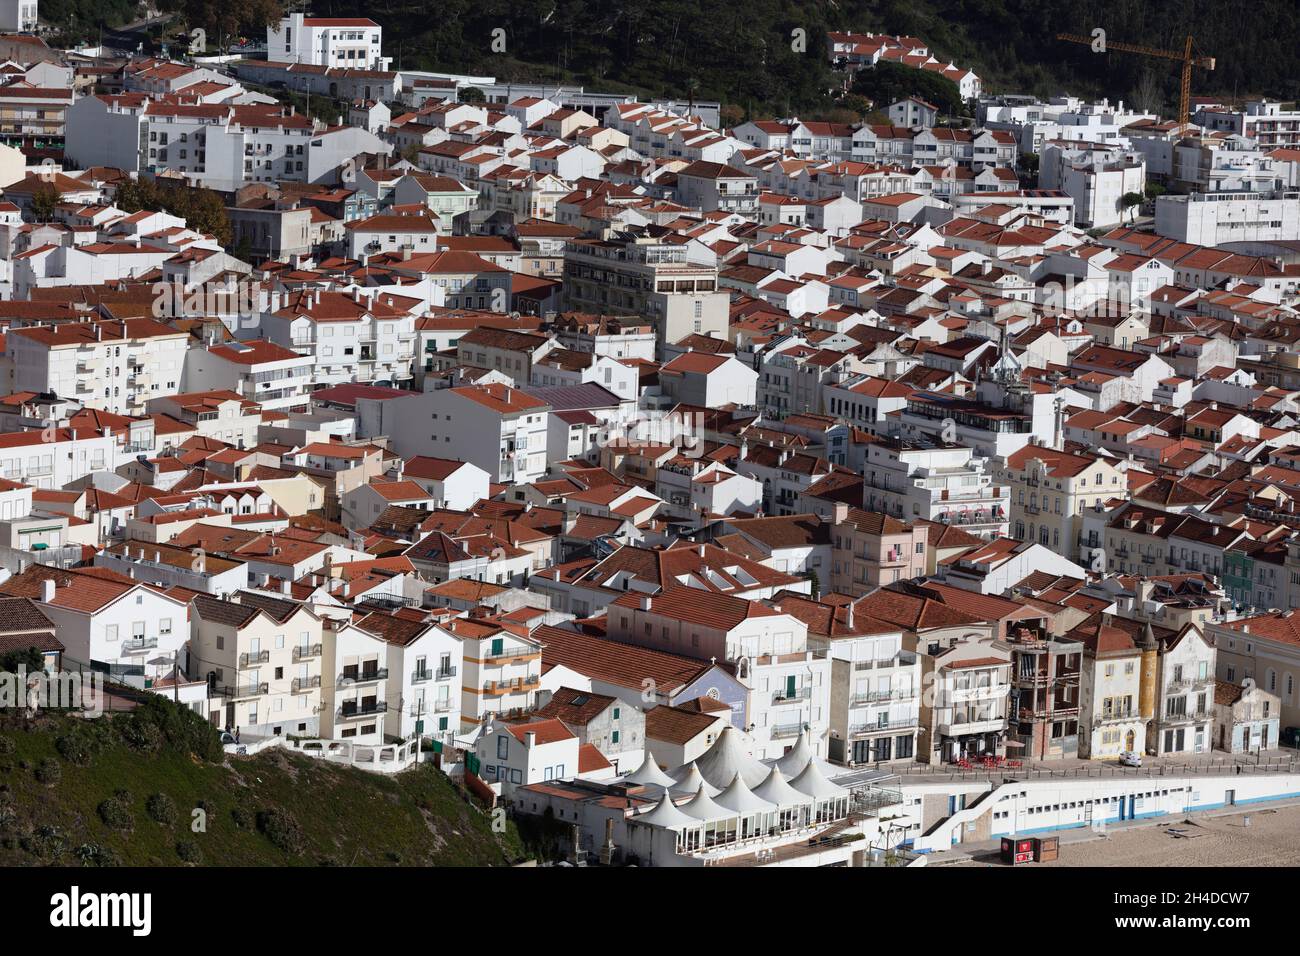 Architektur von Nazaré Portugal. Dichte Häuserstruktur. Weiße Häuser, rote Dächer Stock Photo